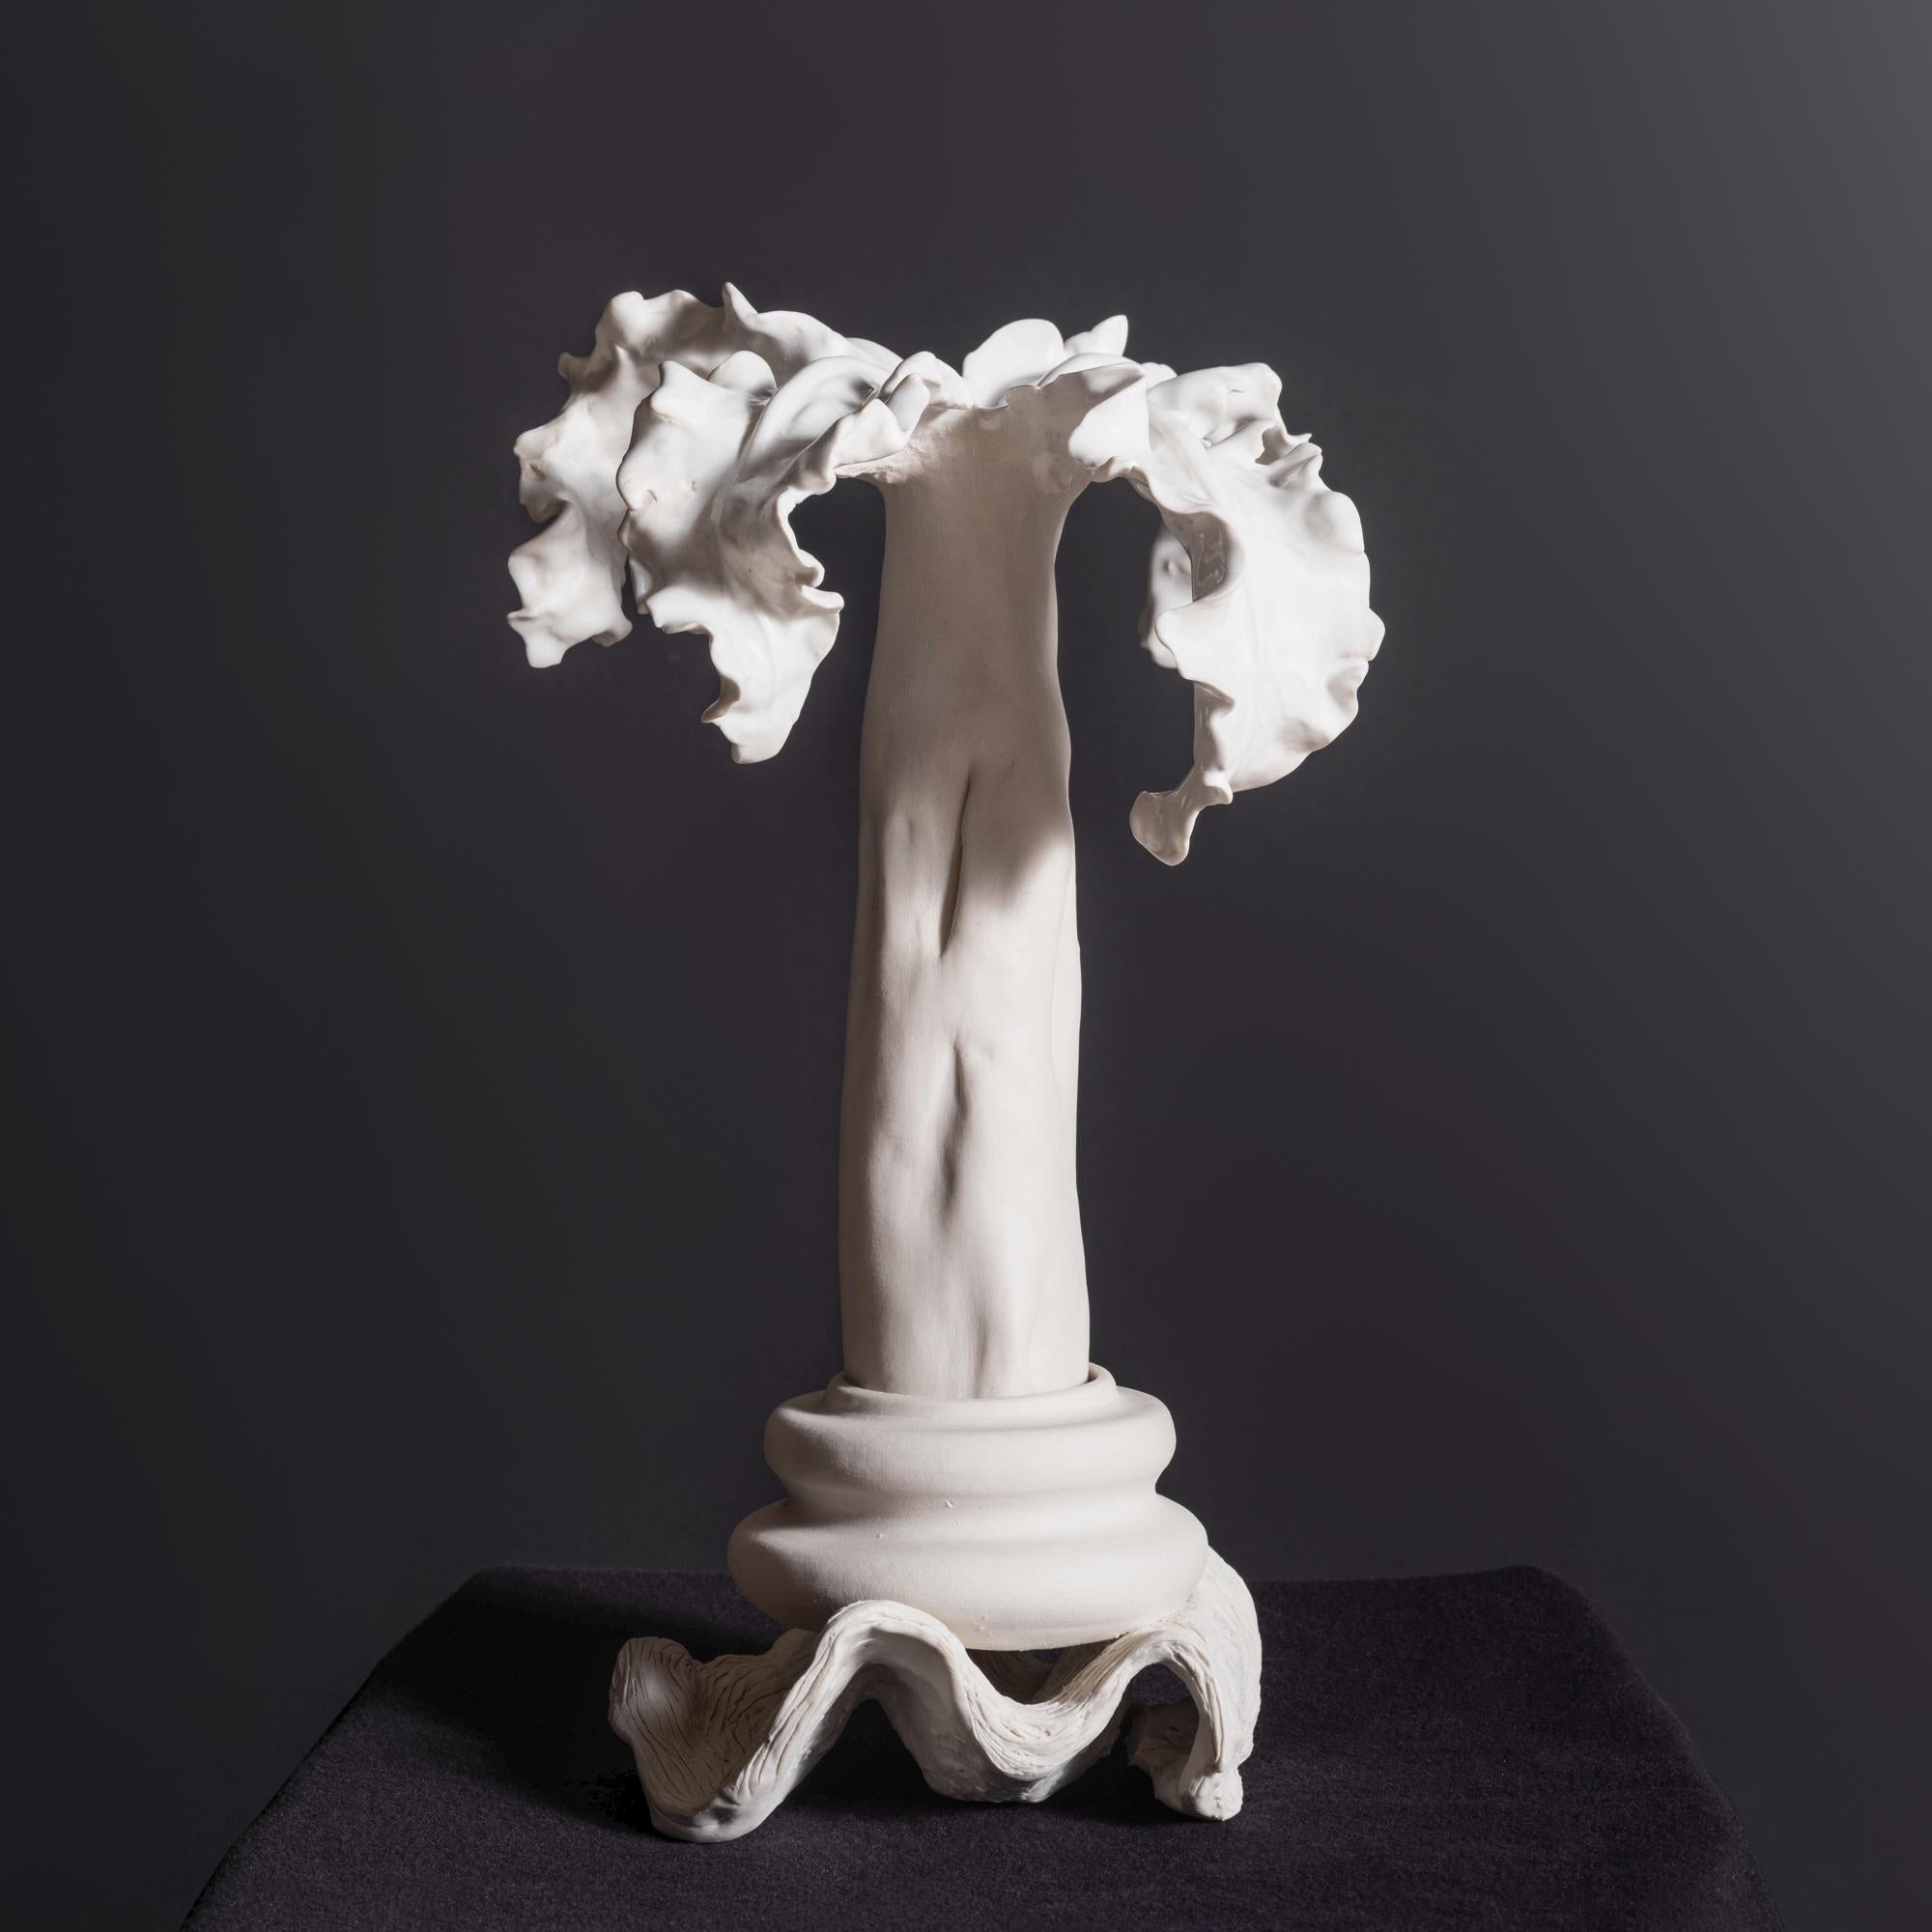 Dieses einzigartige, handgefertigte, glasierte weiße Porzellangefäß der New Yorker Keramikerin und Künstlerin Jenny Min trägt den Titel 